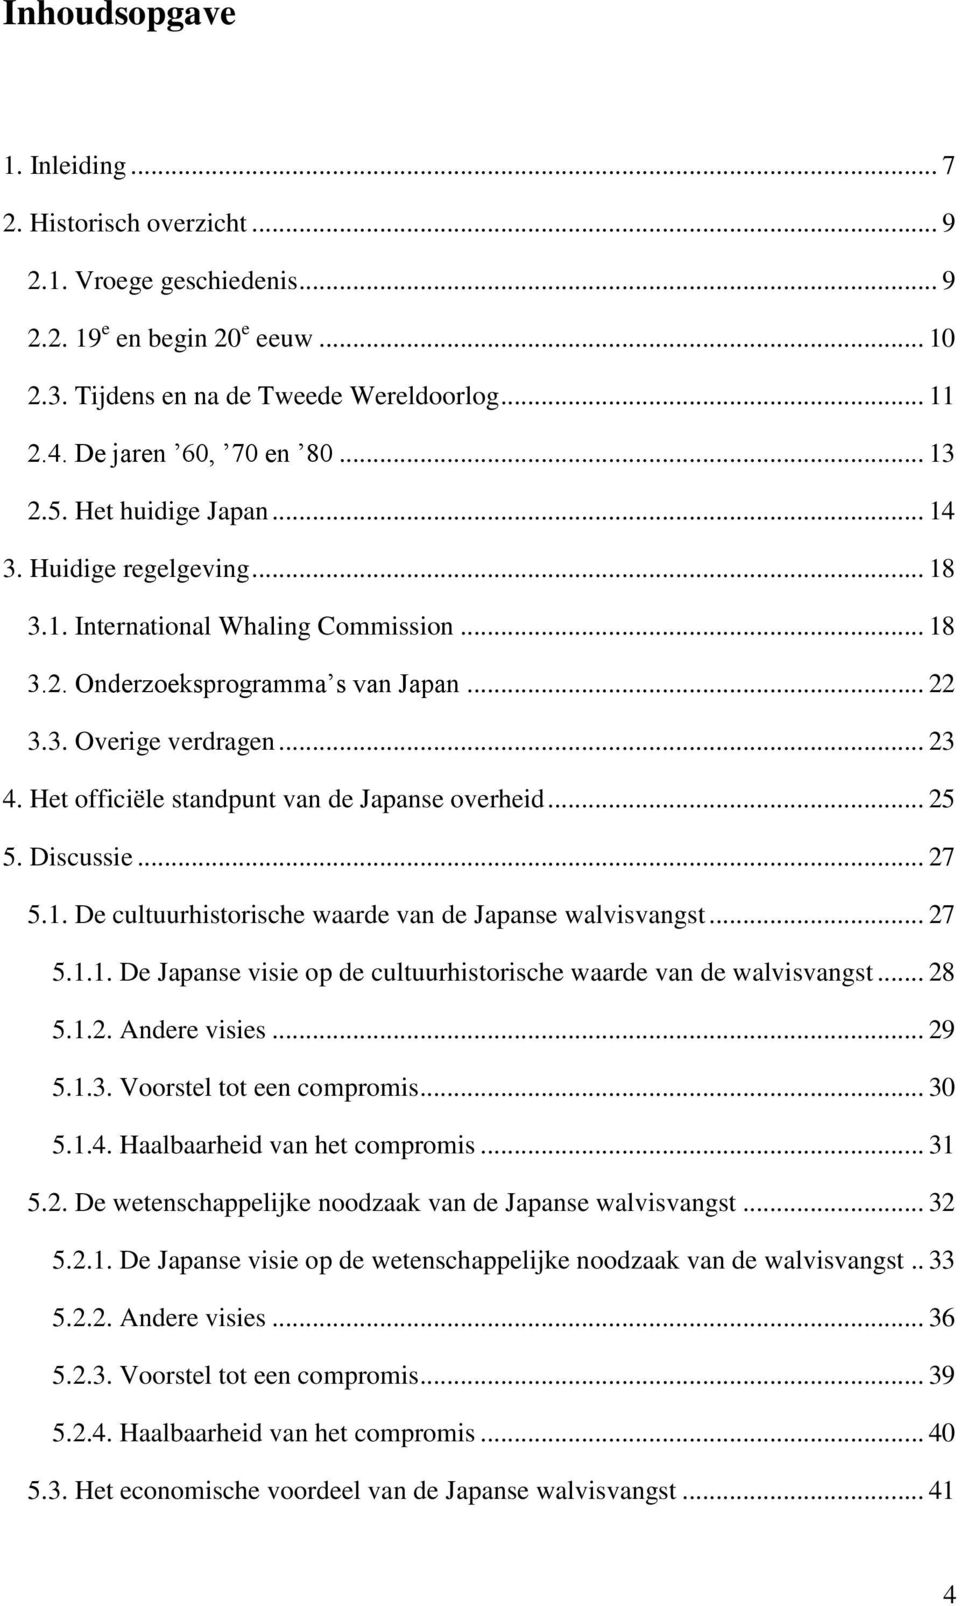 .. 23 4. Het officiële standpunt van de Japanse overheid... 25 5. Discussie... 27 5.1. De cultuurhistorische waarde van de Japanse walvisvangst... 27 5.1.1. De Japanse visie op de cultuurhistorische waarde van de walvisvangst.